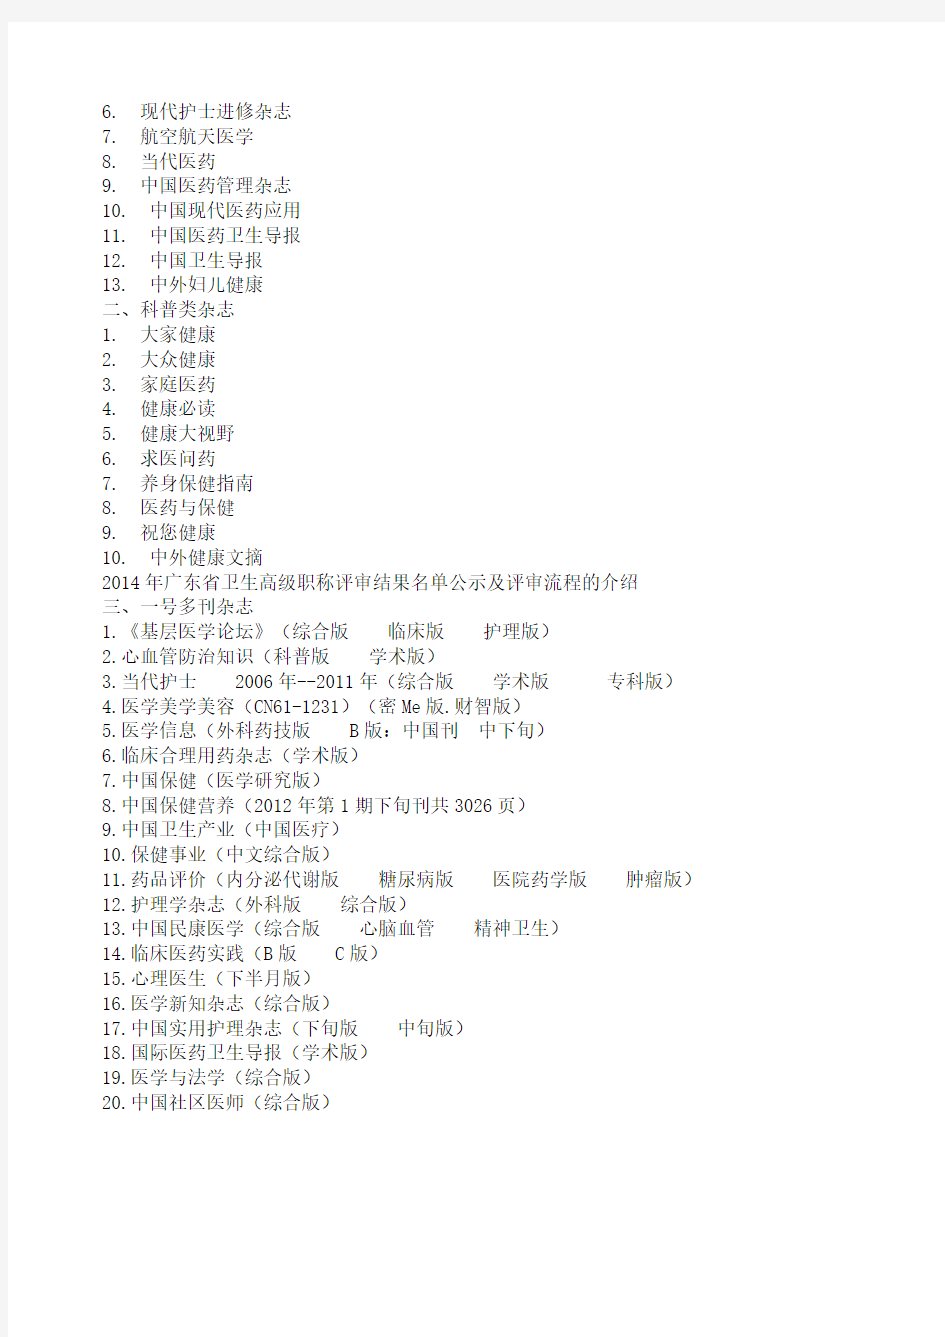 2014年广东省卫生高级职称评审结果名单公示及评审流程的介绍